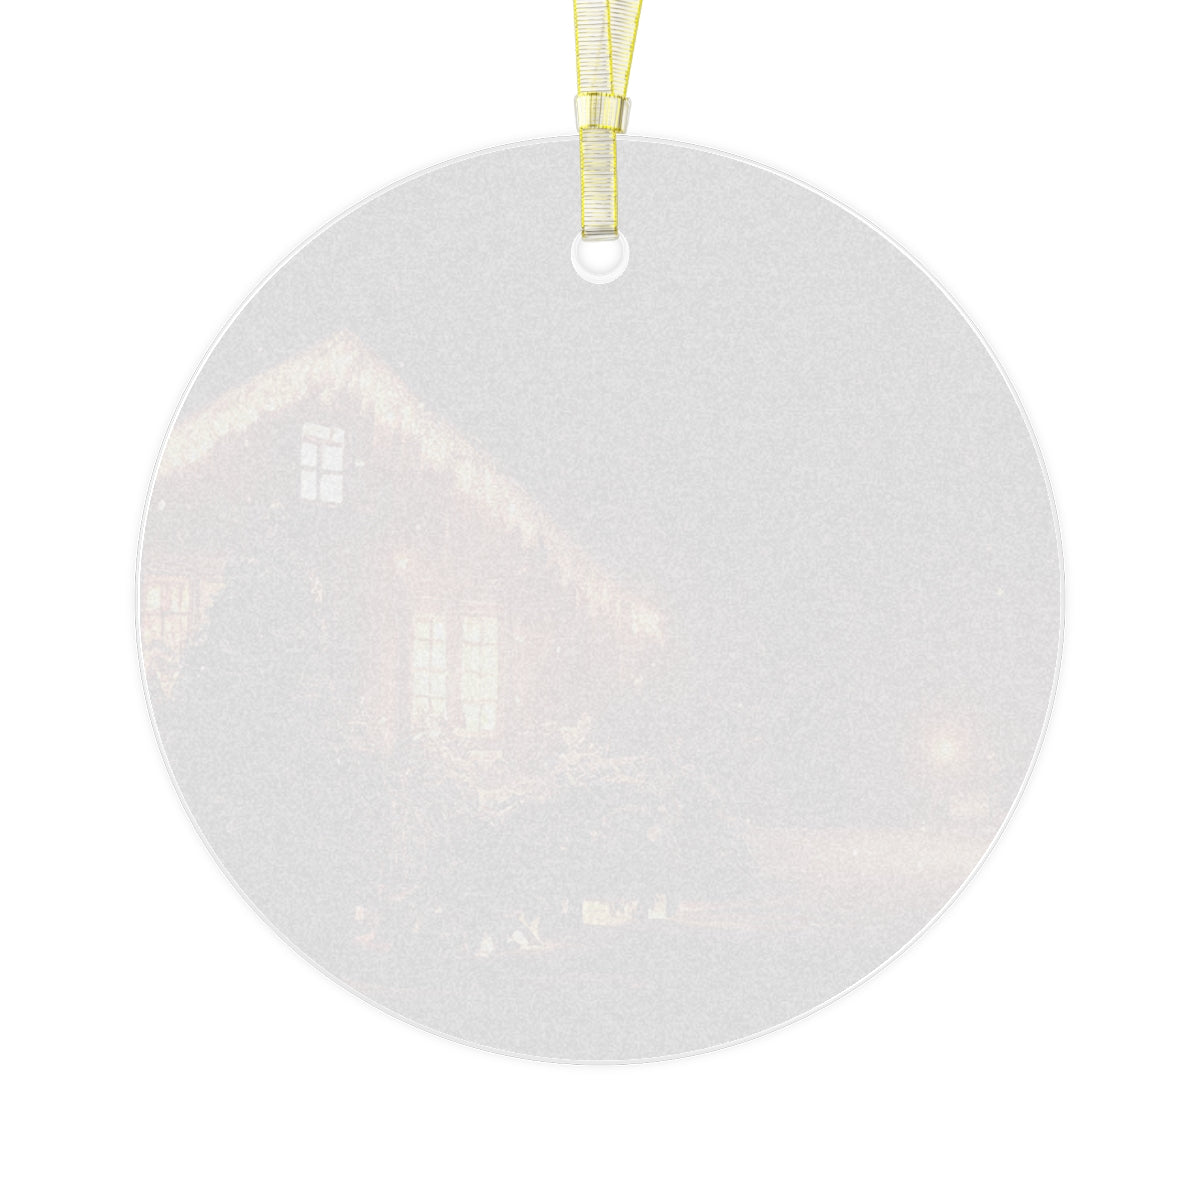 Neduz Designs Holidays Christmas Evening Home Glass Ornament